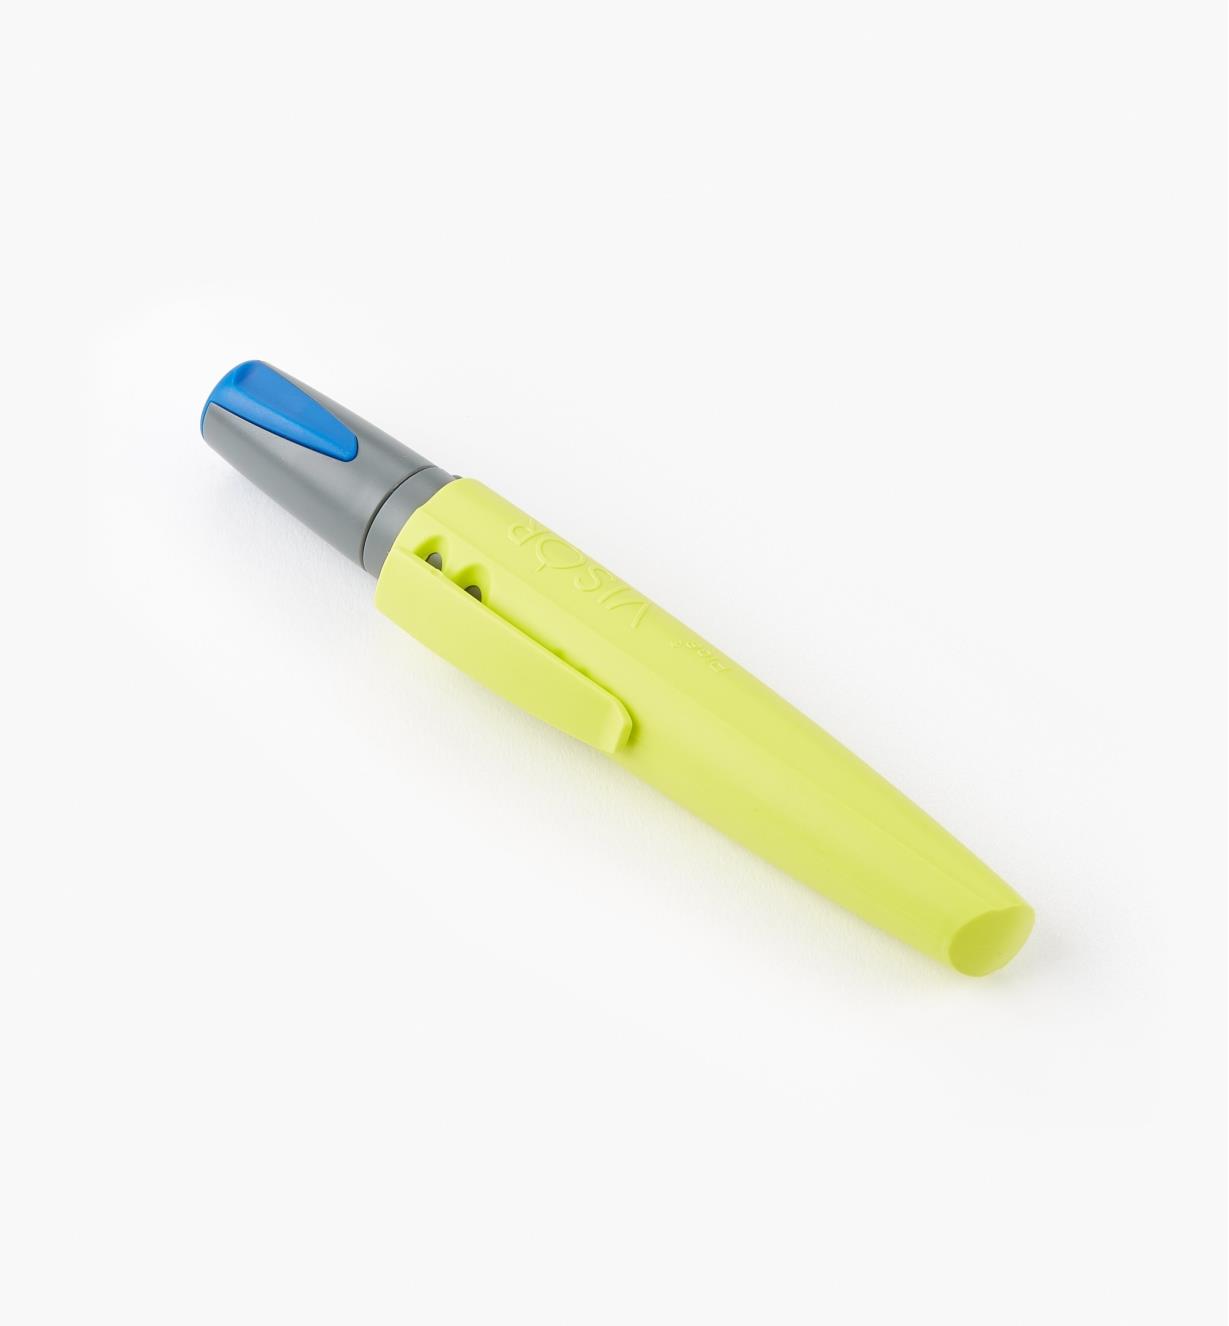 25K0472 - Pica-Visor Blue Dry-Erase Crayon, each